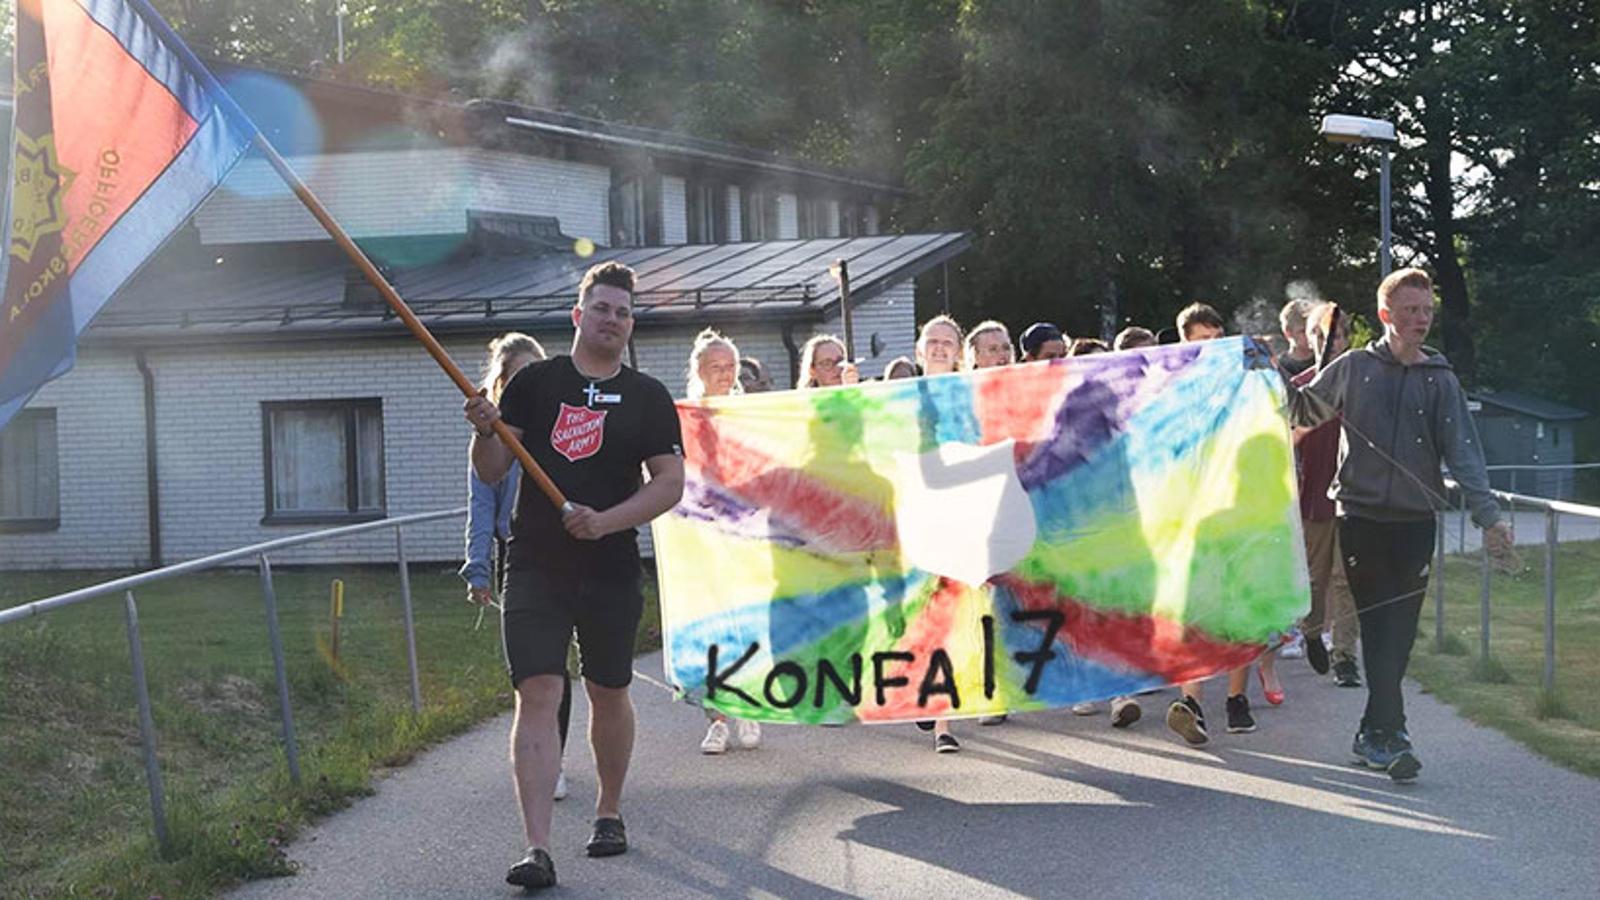 Längst fram går det en man från Frälsningsarmén som håller i en flagga. Bakom honom går ett gäng konfirmander som håller i ett färgglatt skynke med texten "Konfa 17".